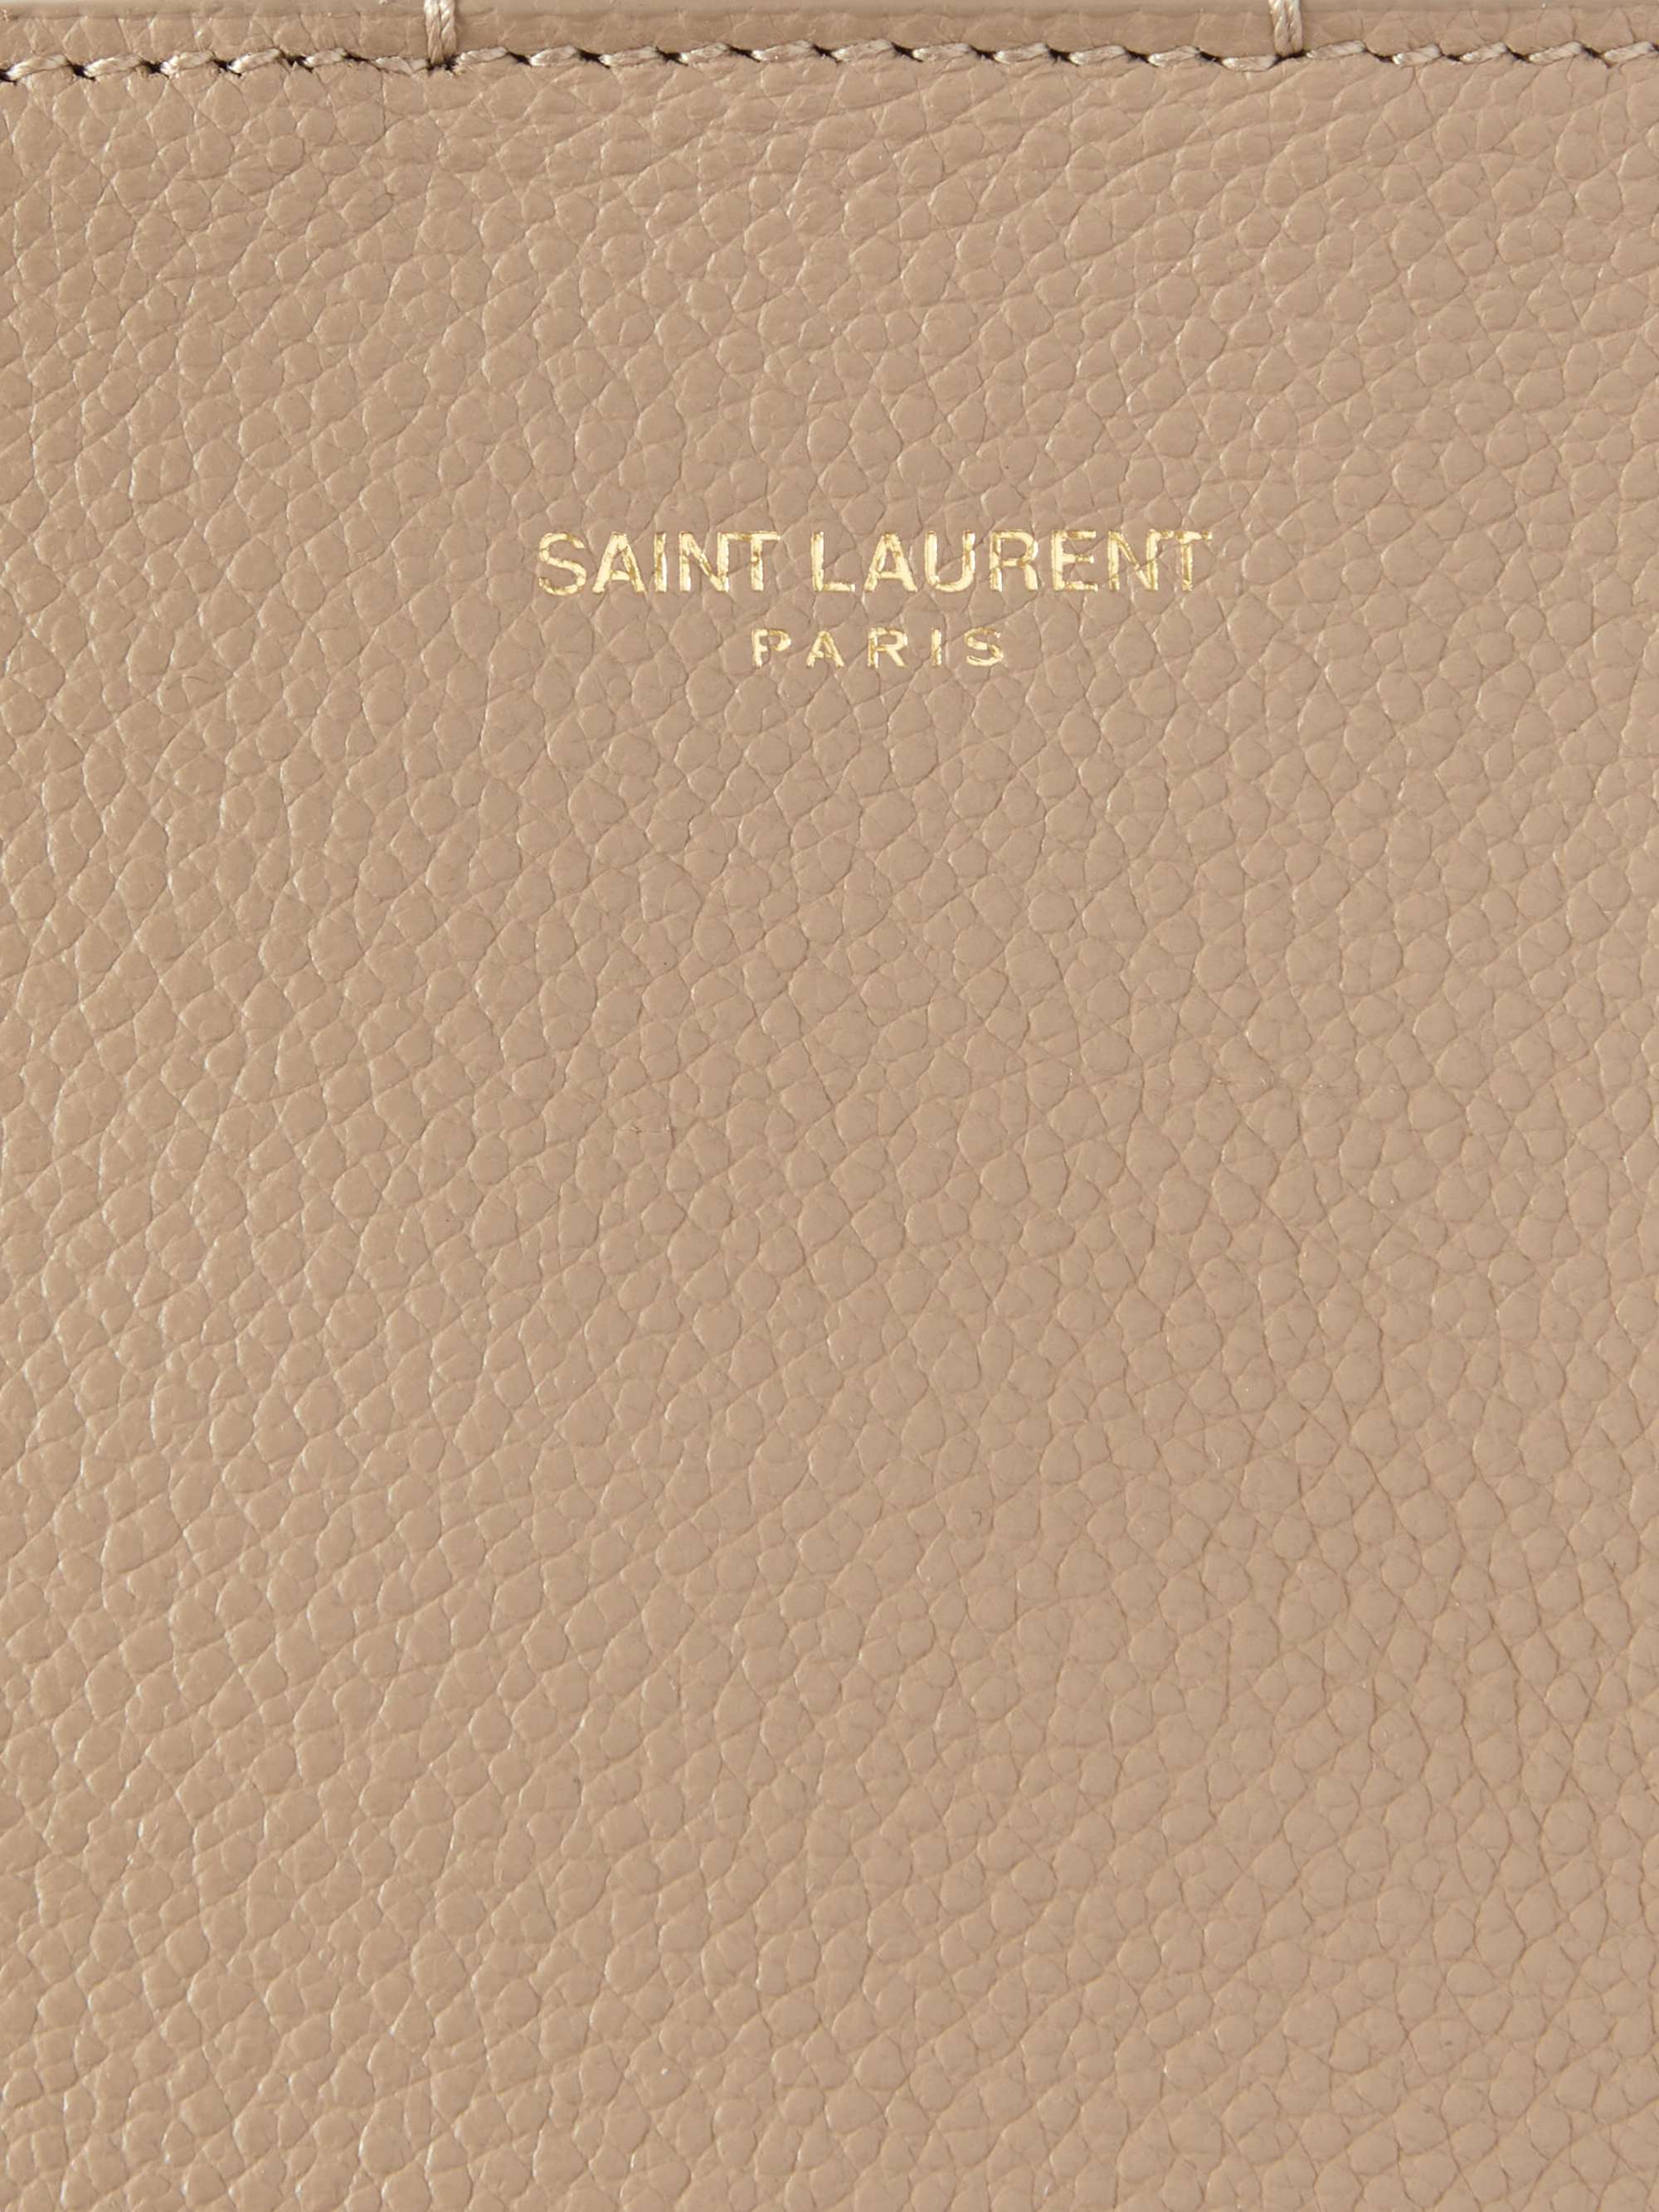 SAINT LAURENT Full-Grain Leather Tote Bag